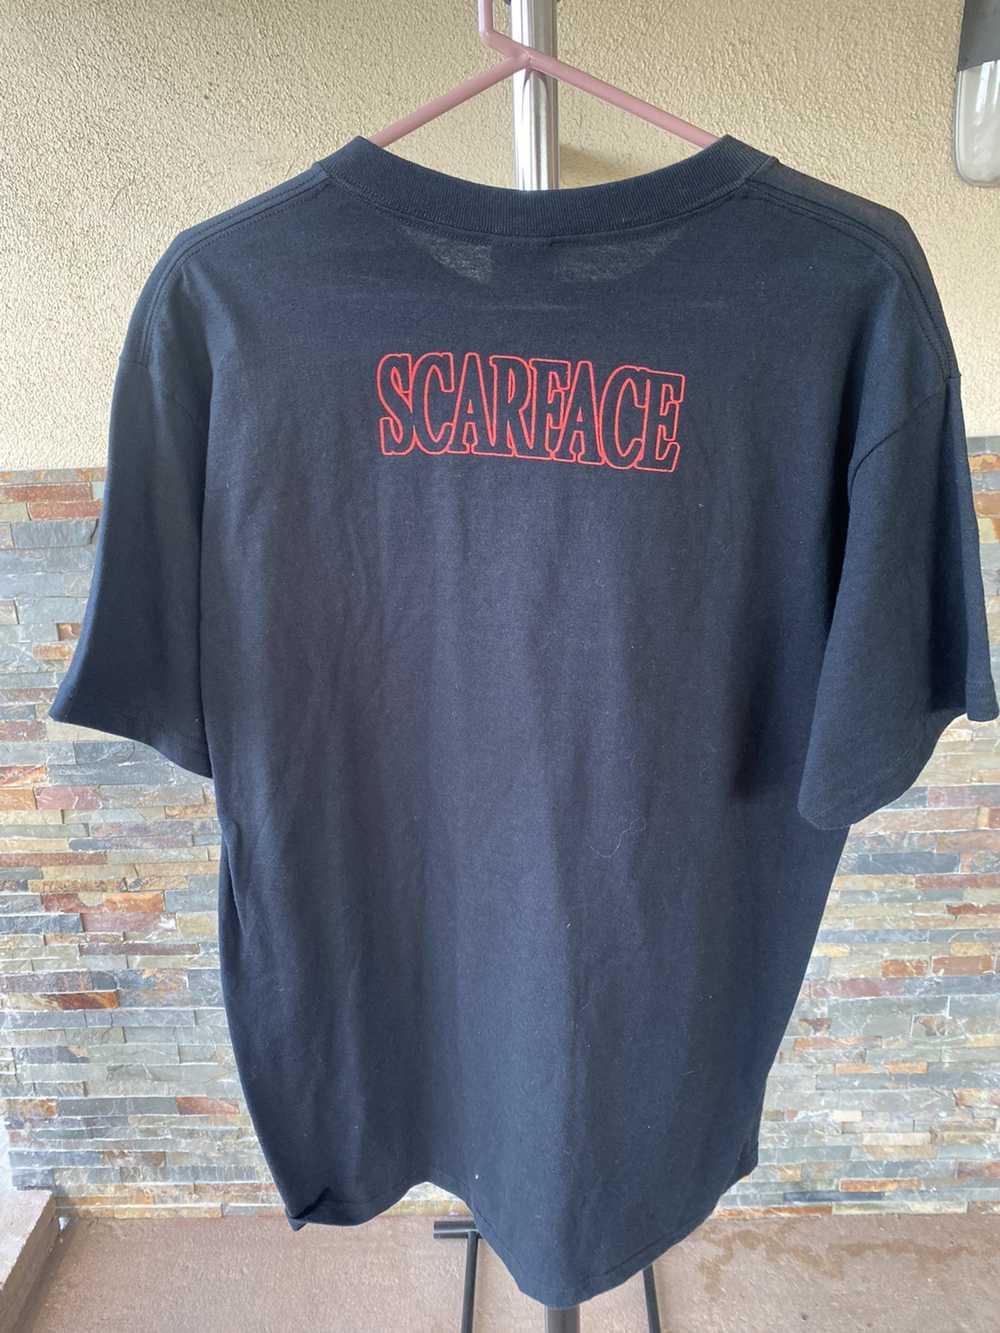 Movie Scareface shirt - image 4